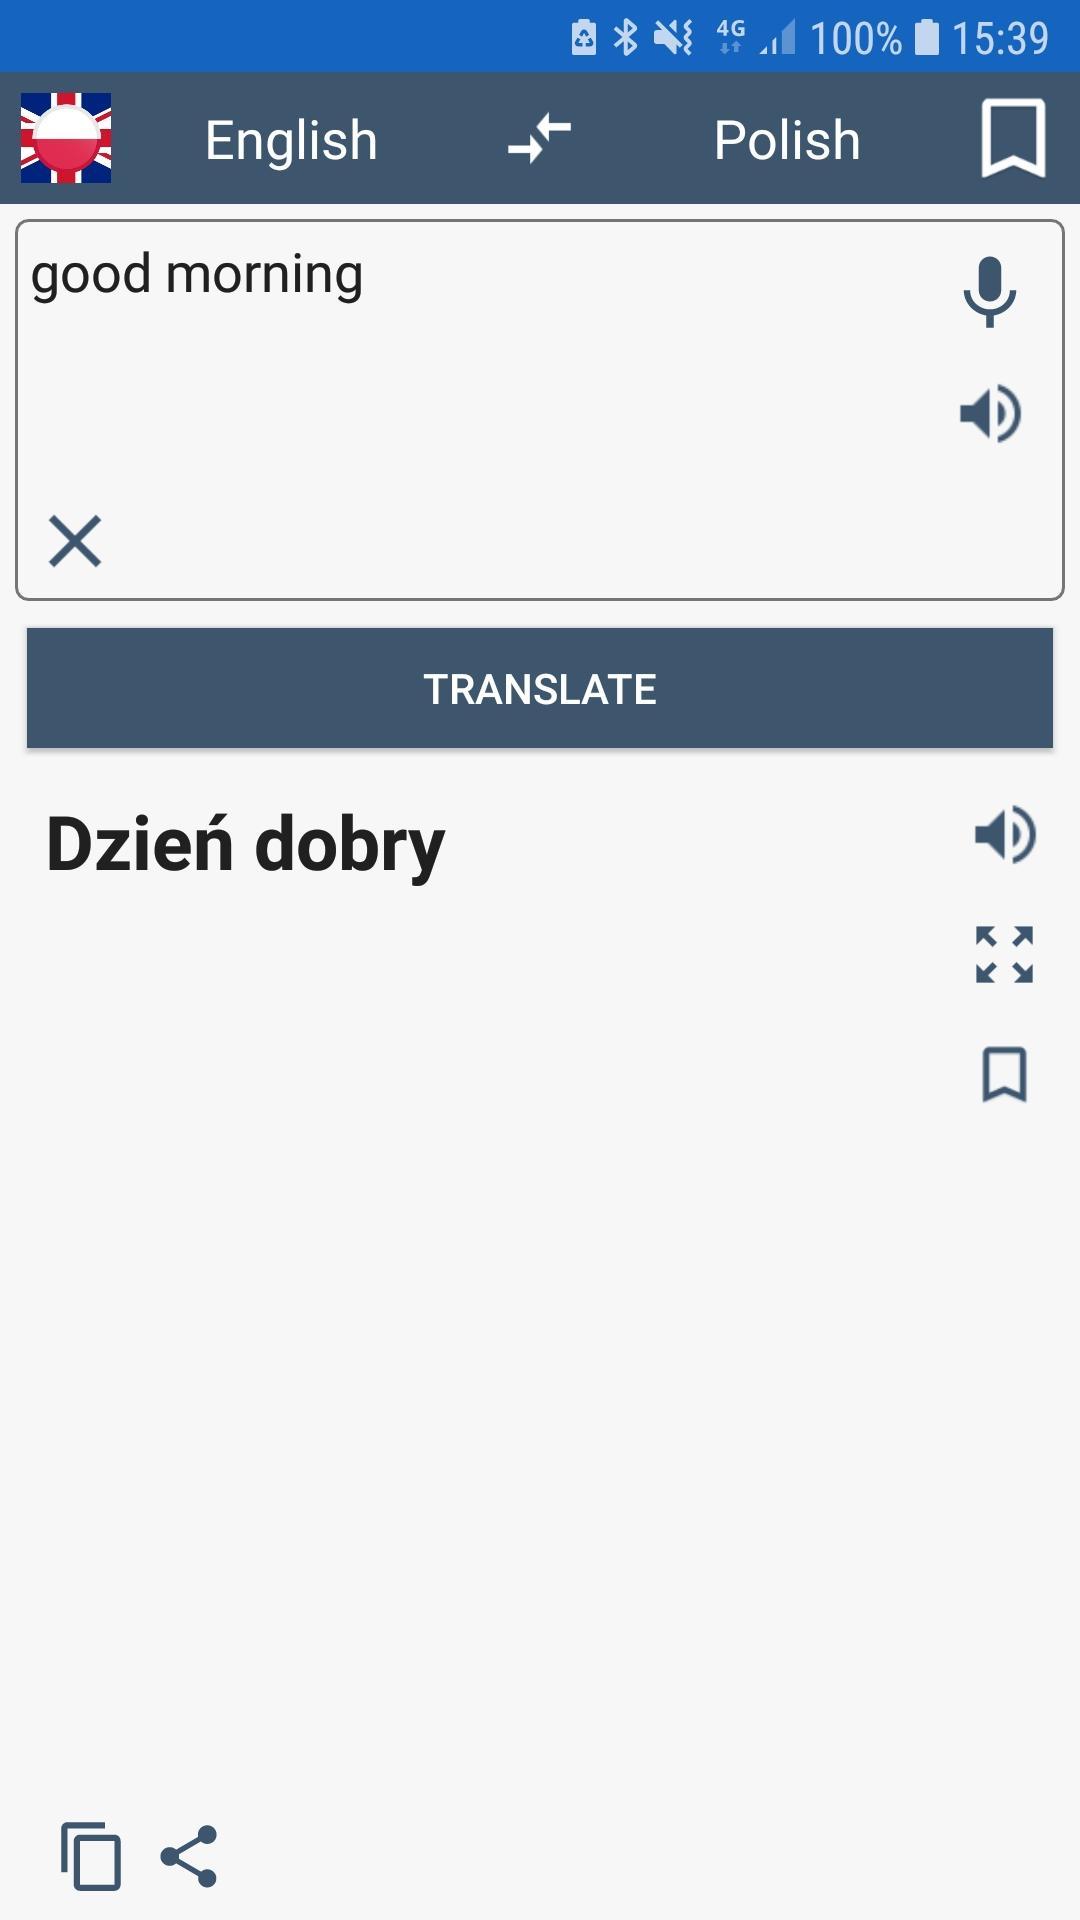 Tłumacz polsko angielski for Android - APK Download